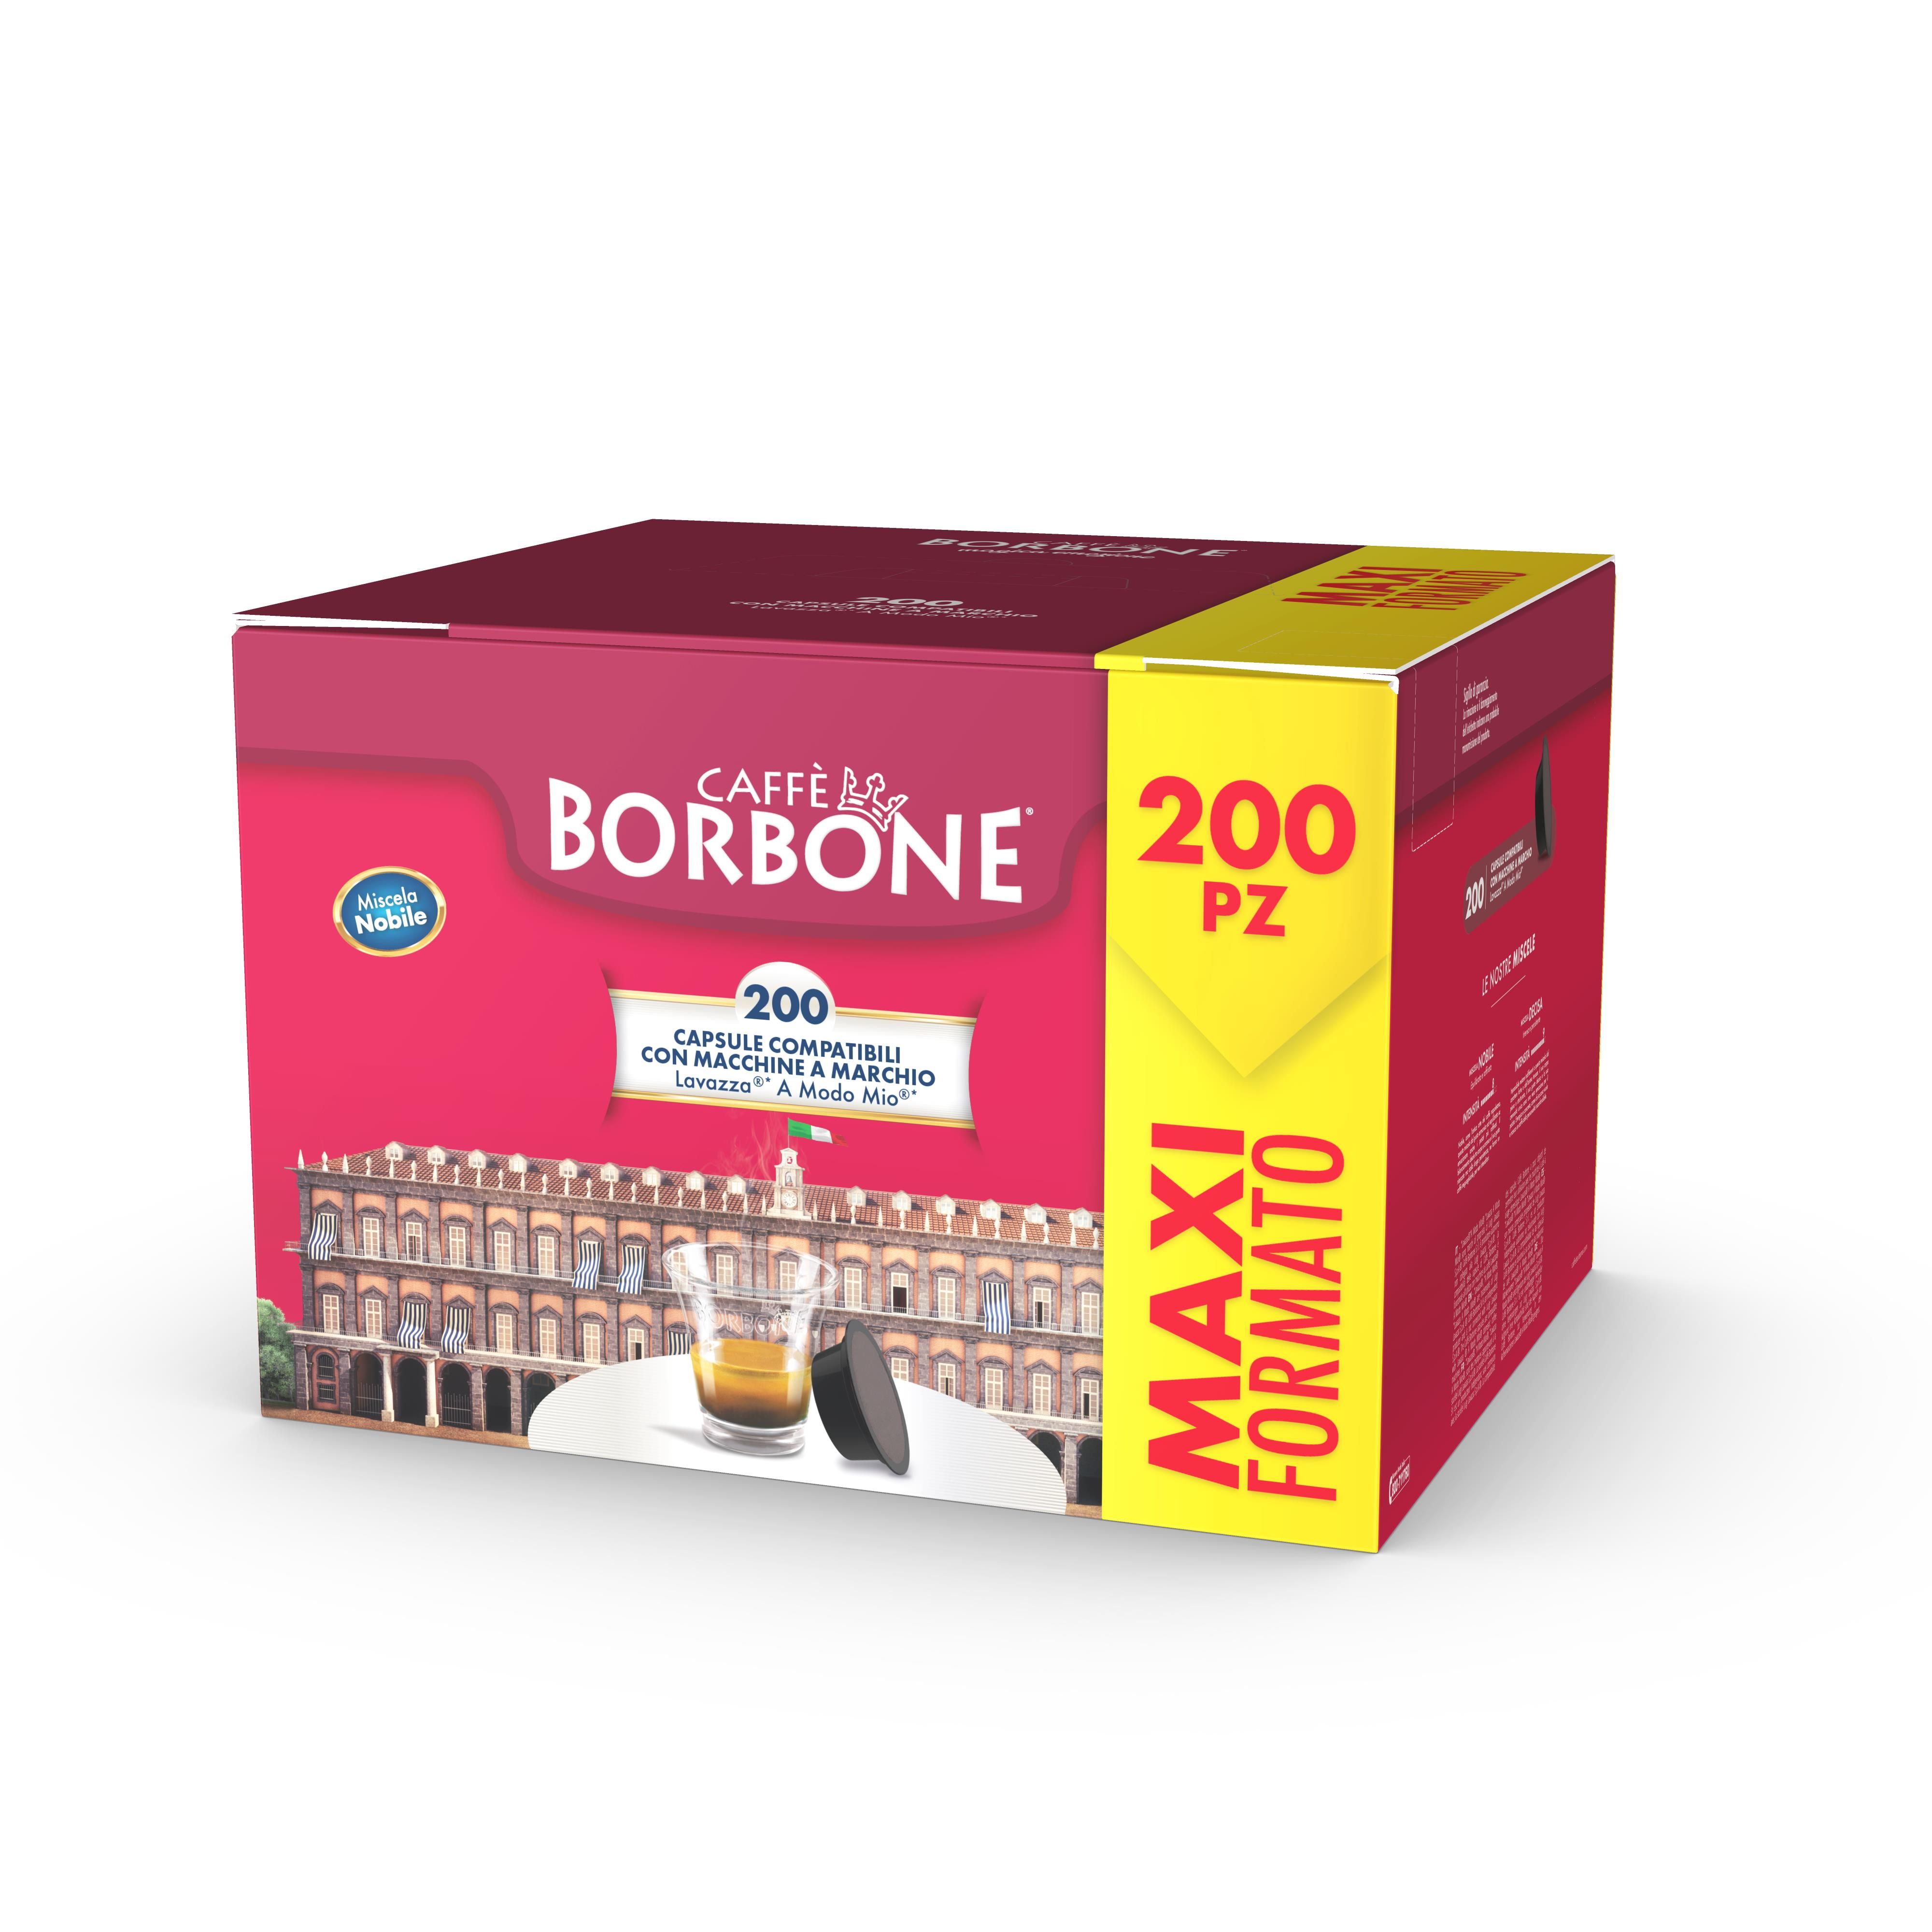 Borbone Box 50 Capsule Caffè - Miscela Nobile compatibili Nespresso Borbone